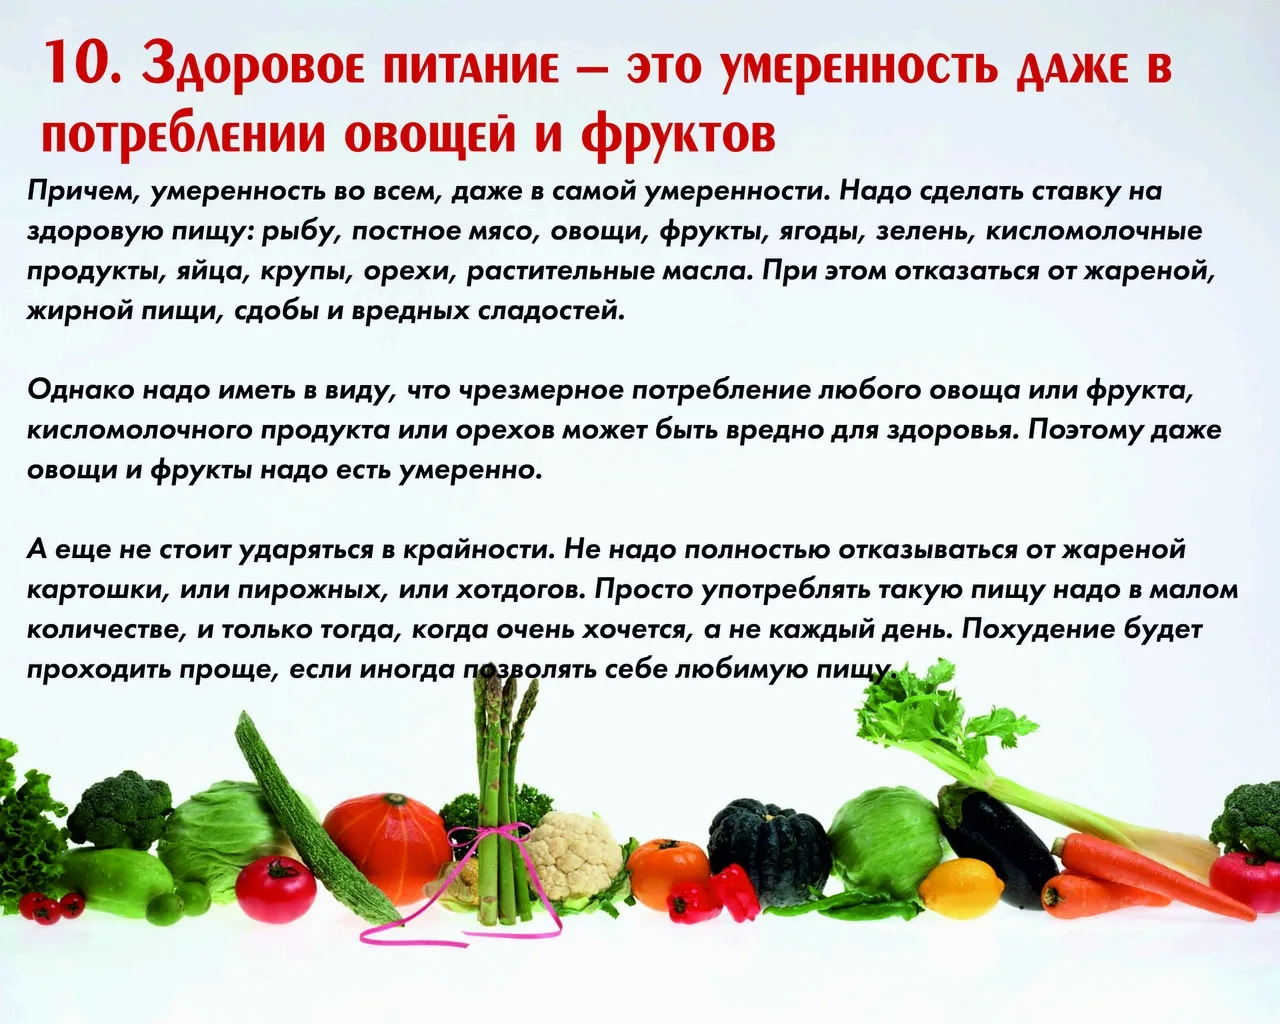 Здоровое питание россии. День здорового питания. 2 Июня день здорового питания. День здорового питания и отказа от излишеств в еде. Всемирный день правильного питания.